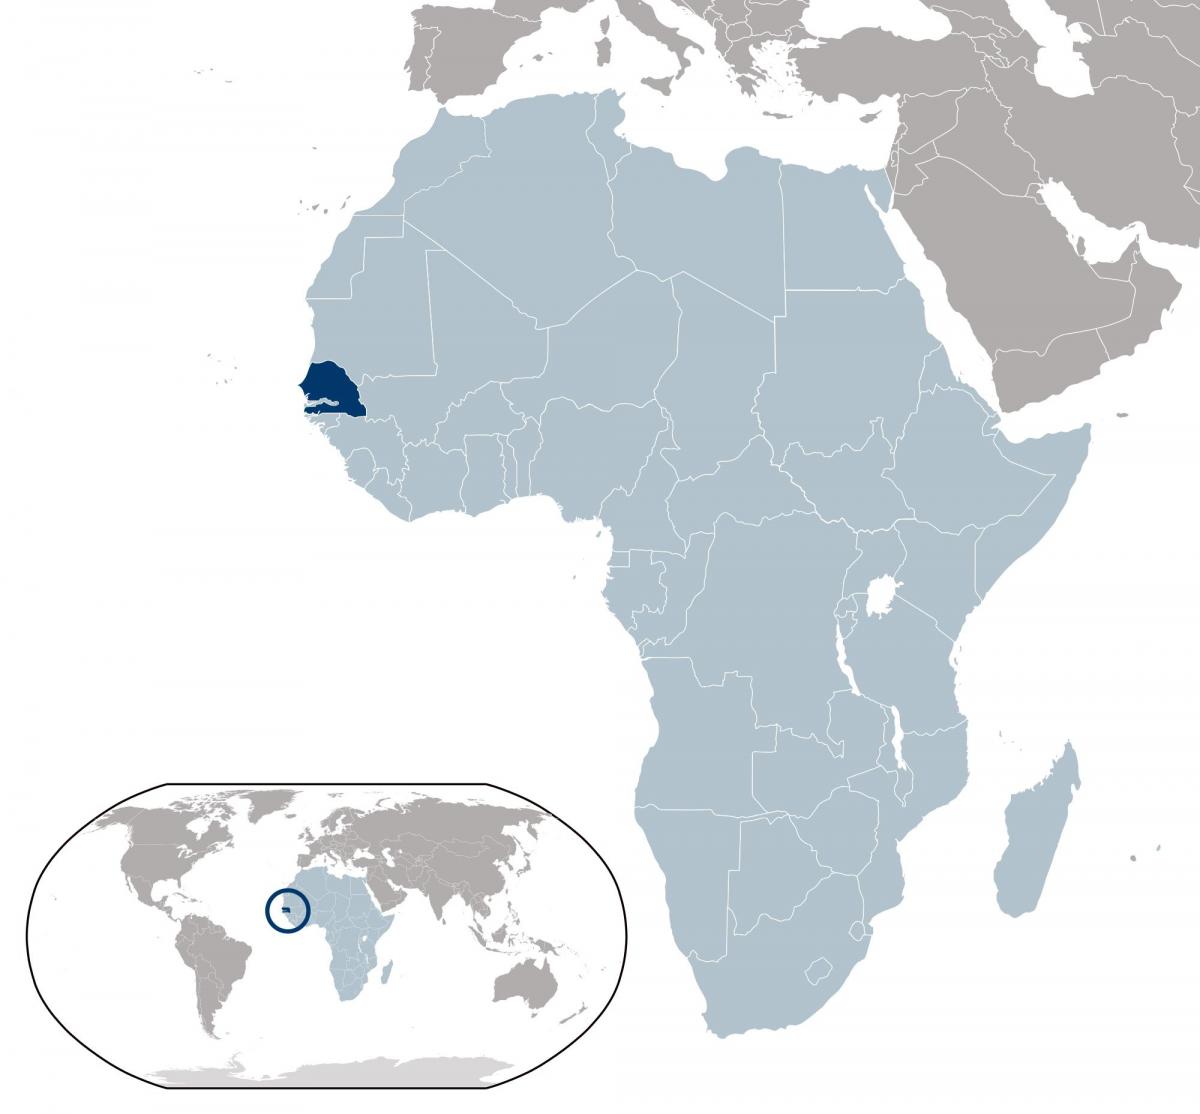 خريطة السنغال موقع على العالم